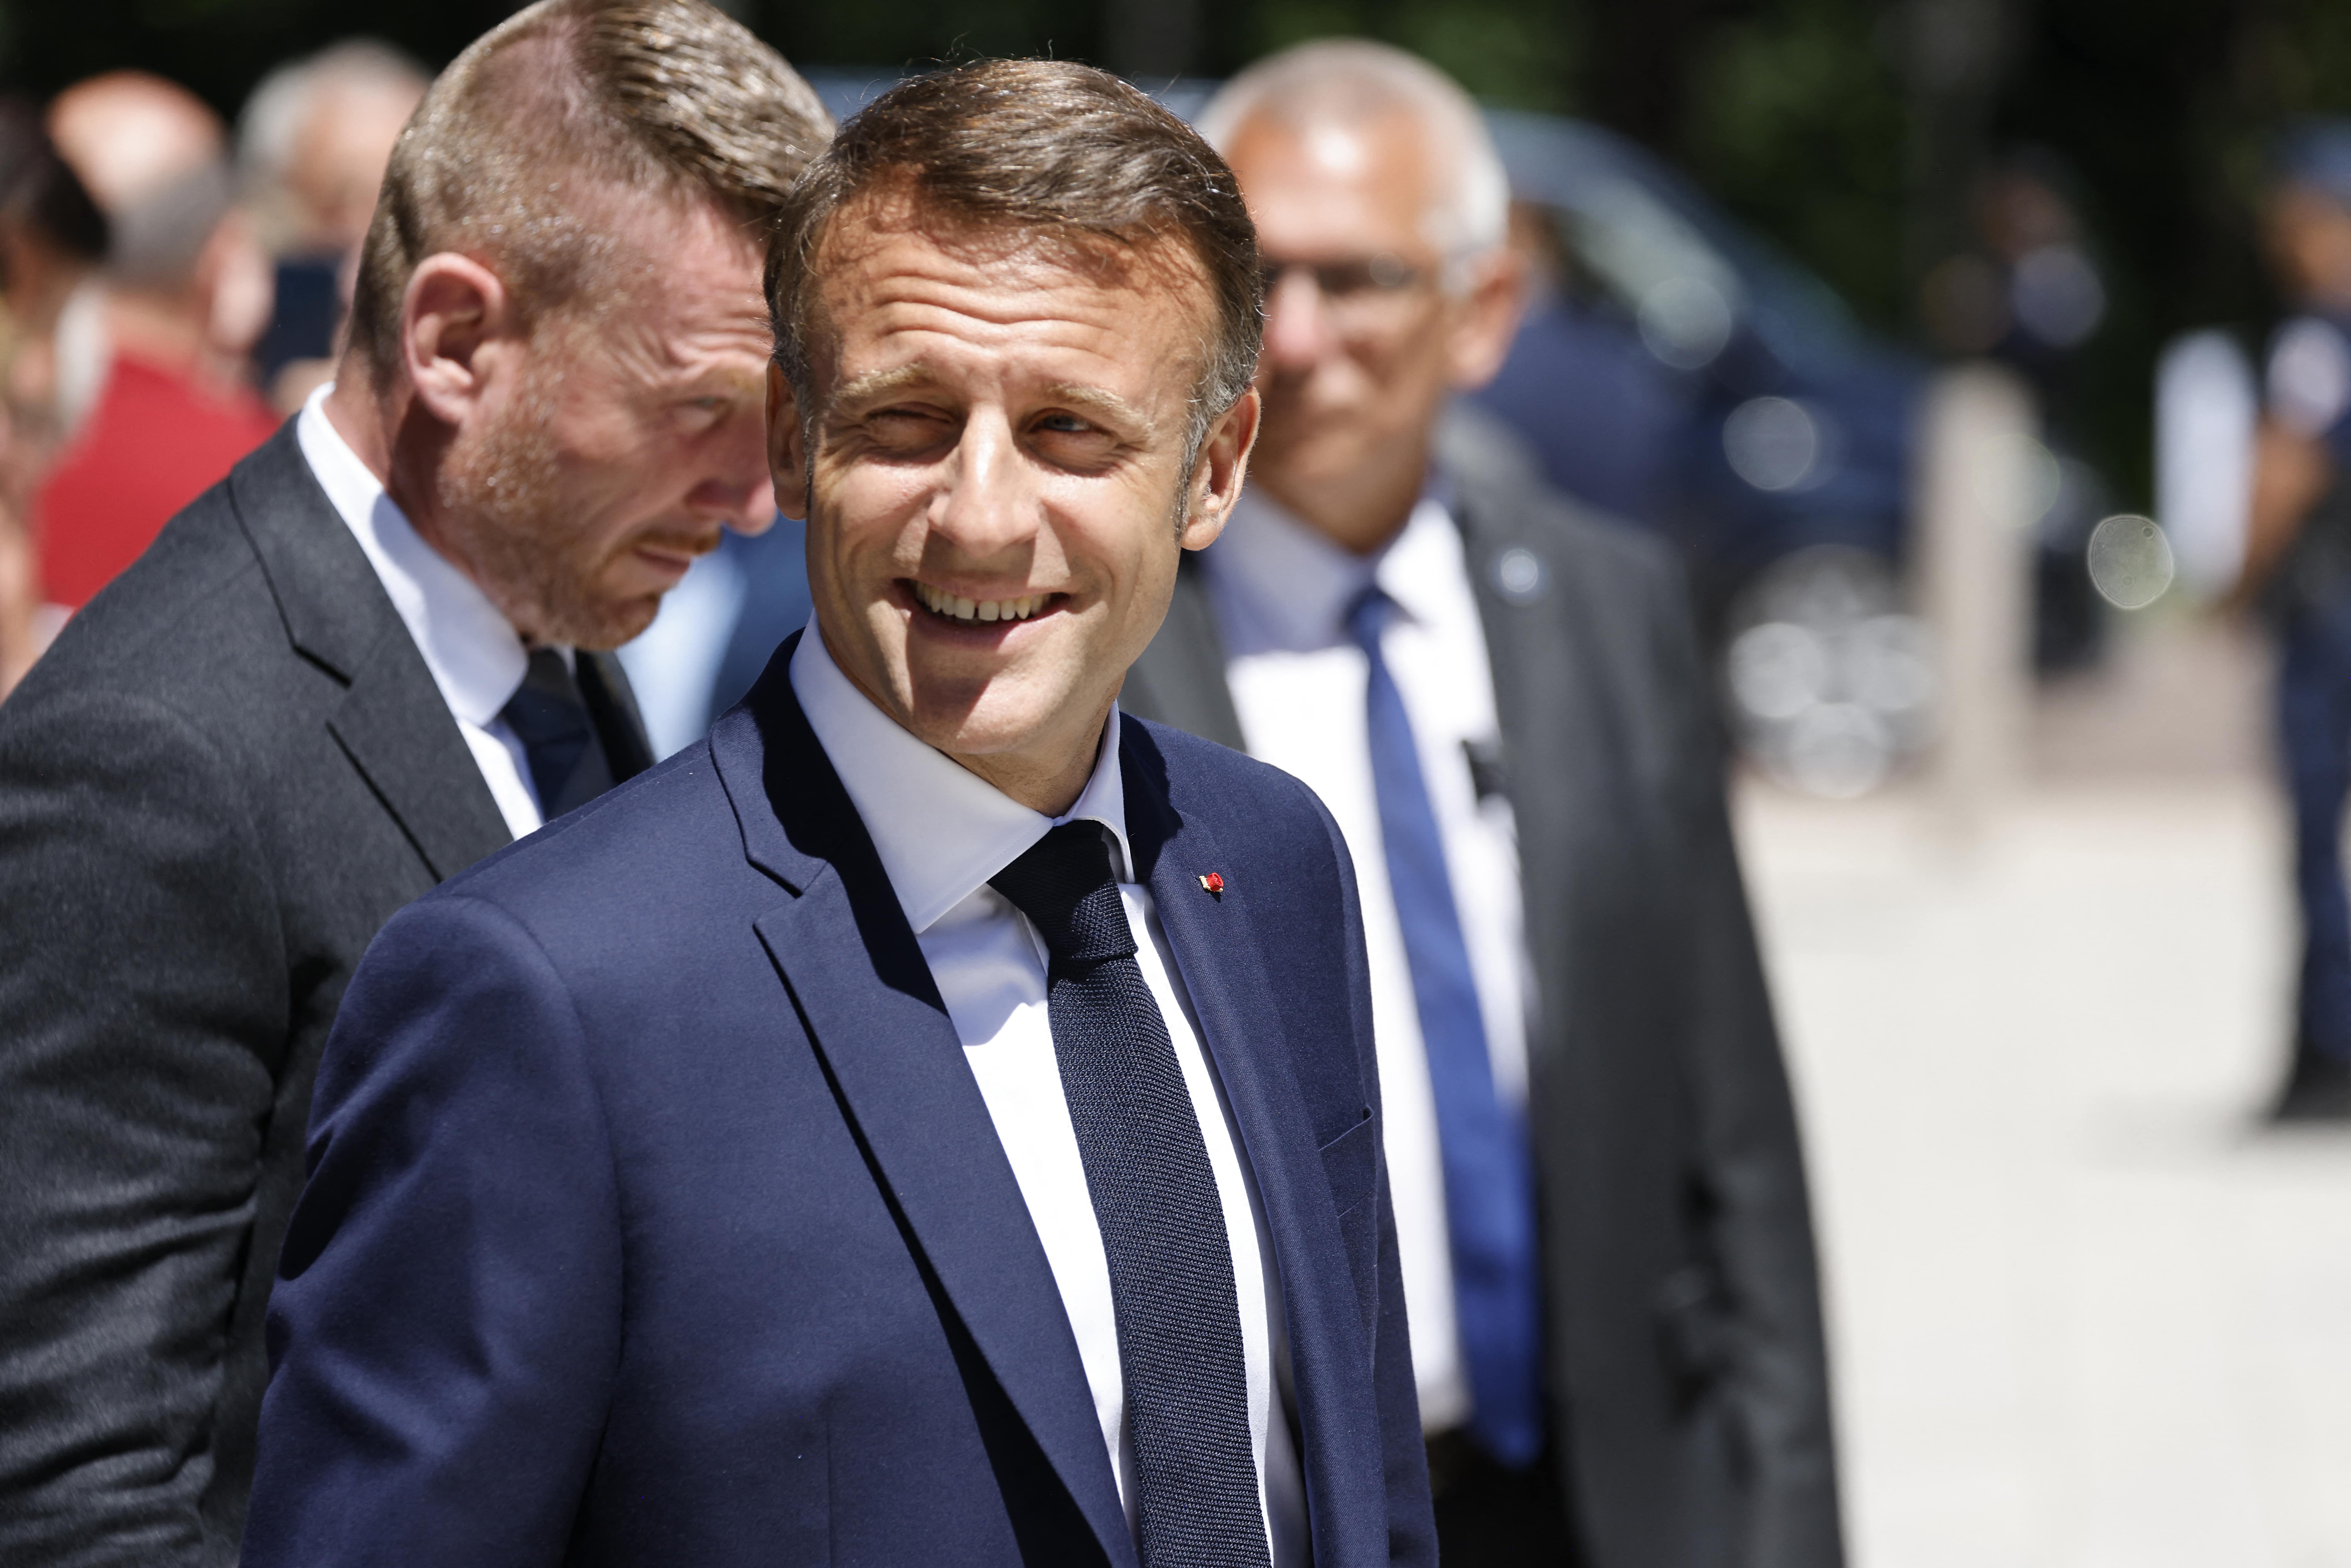 Trzęsienie ziemi we francuskiej polityce. Macron rozwiązuje parlament